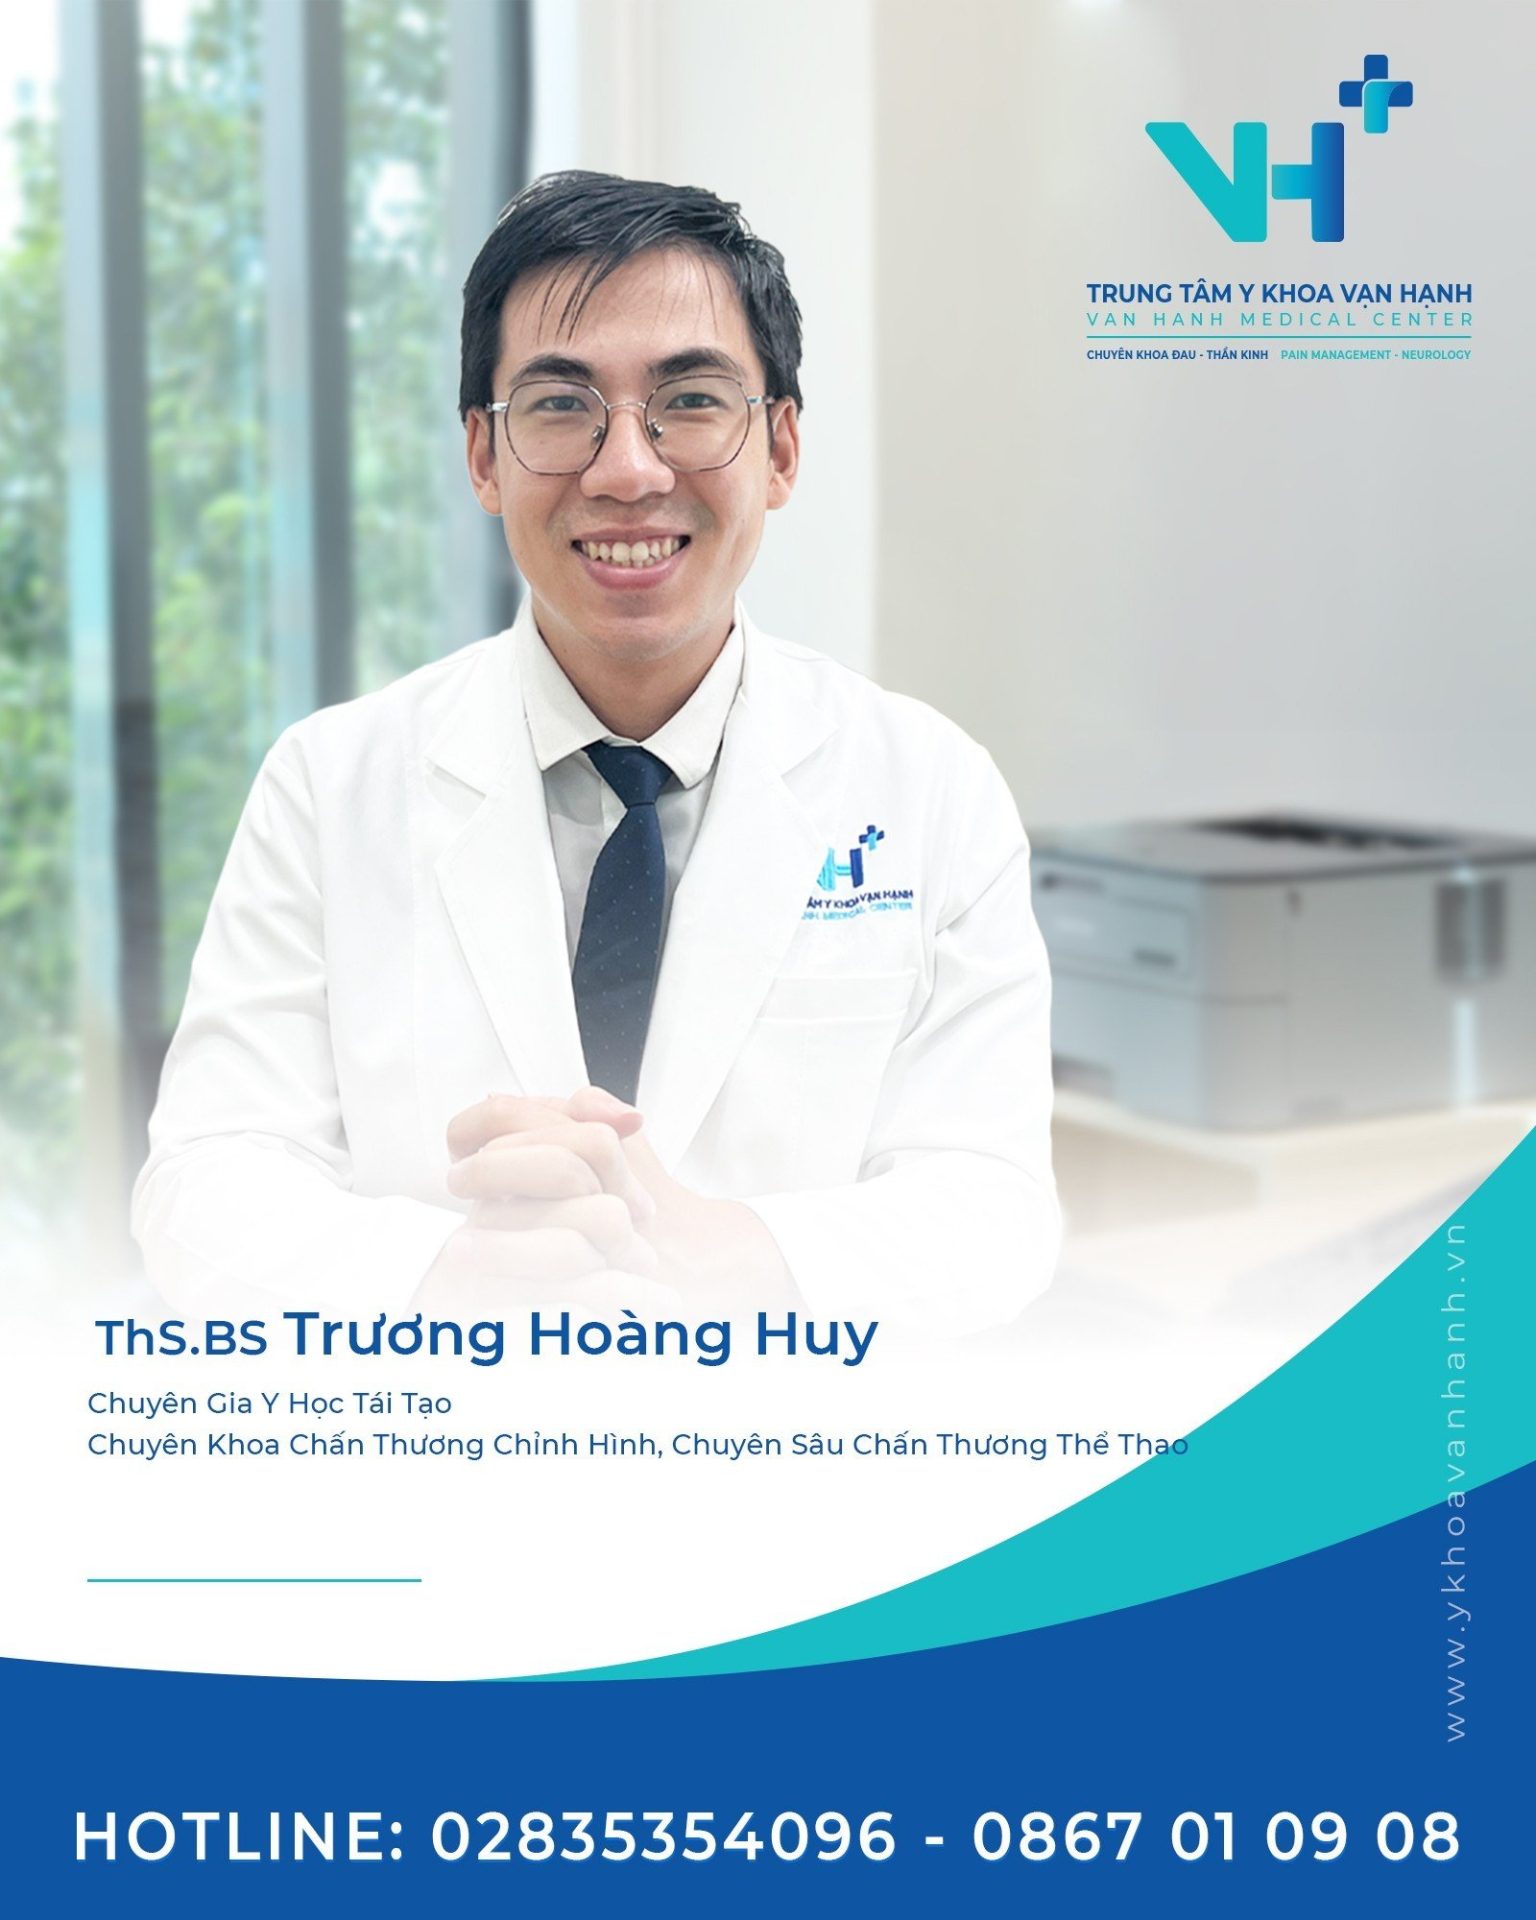 THS.BS Trương Hoàng Huy - Chuyên khoa Chấn thương chỉnh hình